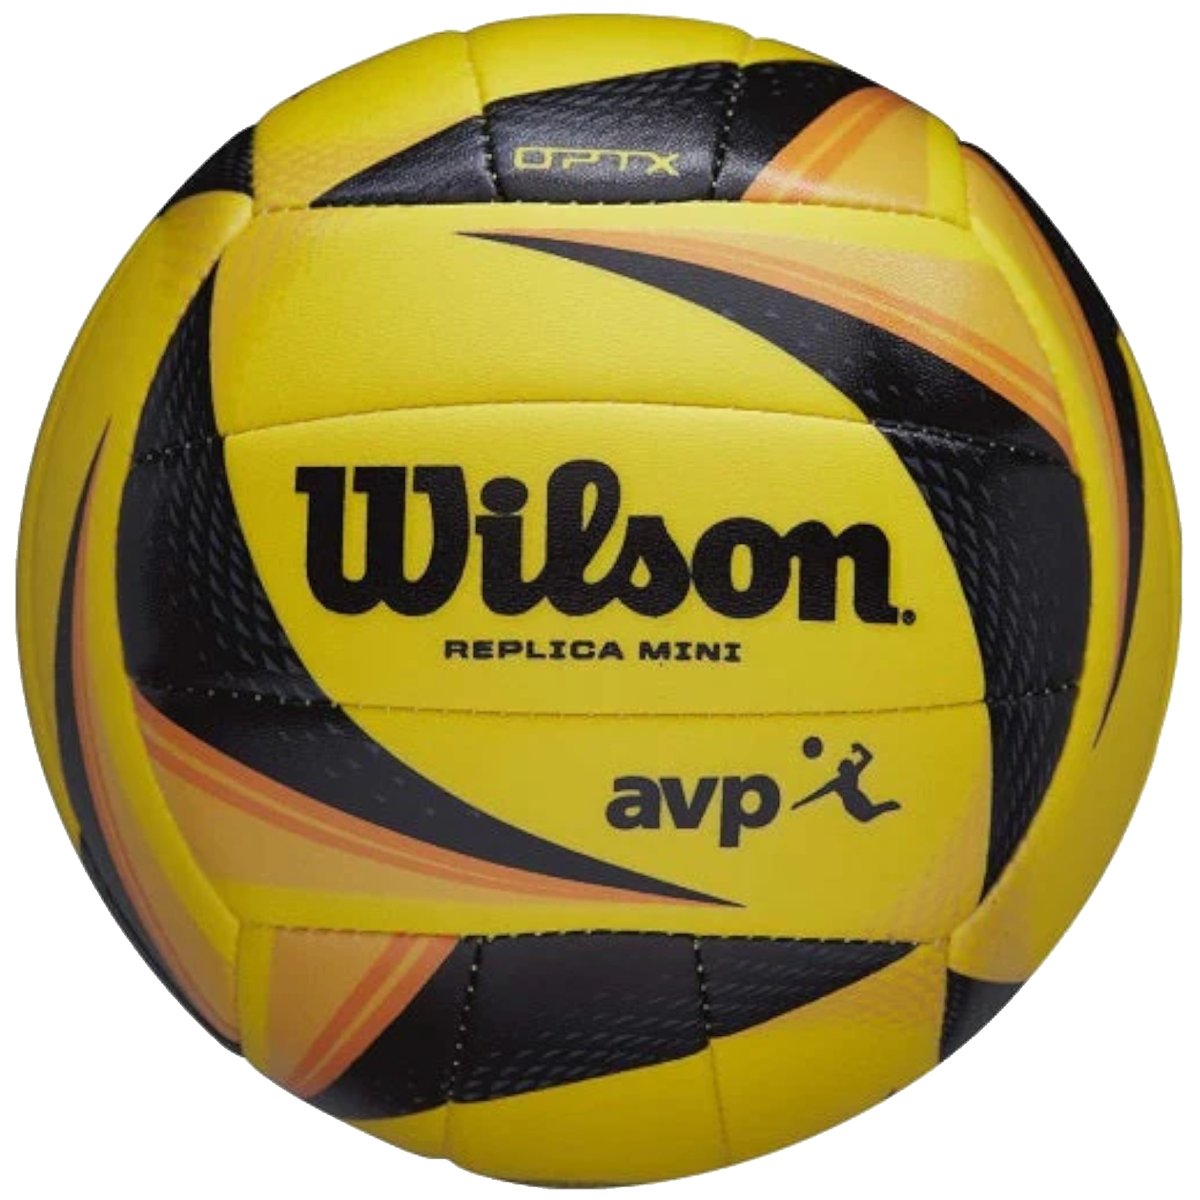 Zdjęcia - Piłka do siatkówki Wilson OPTX AVP Replica Mini Volleyball WTH10020XB, unisex, piłki do siatk 